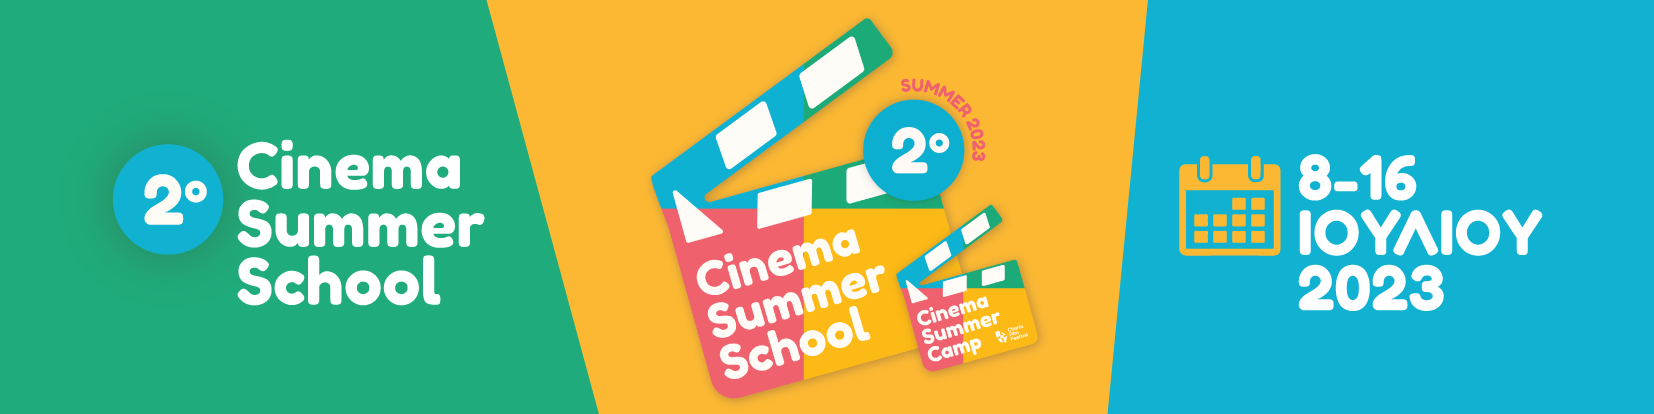 Πρόσκληση συμμετοχής στο 2ο Θερινό Σχολείο Κινηματογράφου/ Cinema Summer Camp του Φεστιβάλ Κινηματογράφου Χανίων | ΠΕΚ